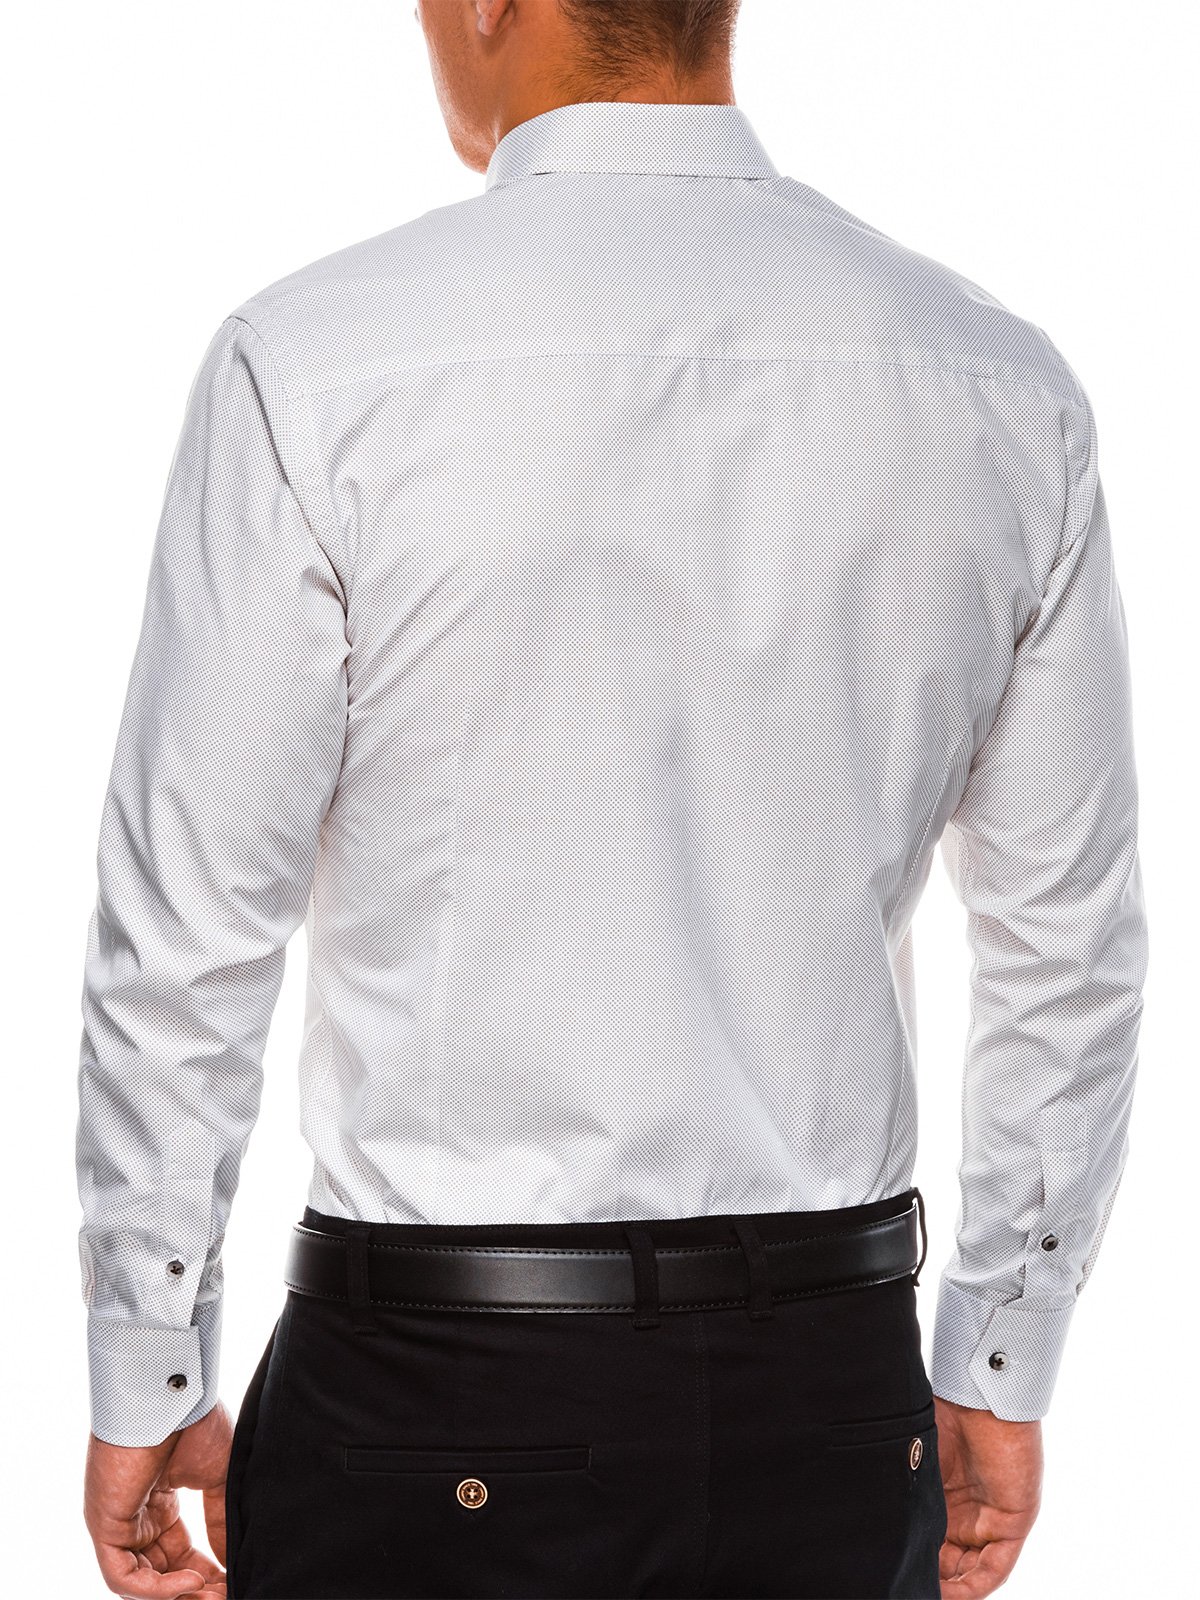 Men's elegant shirt with long sleeves K478 - white/beige | MODONE ...